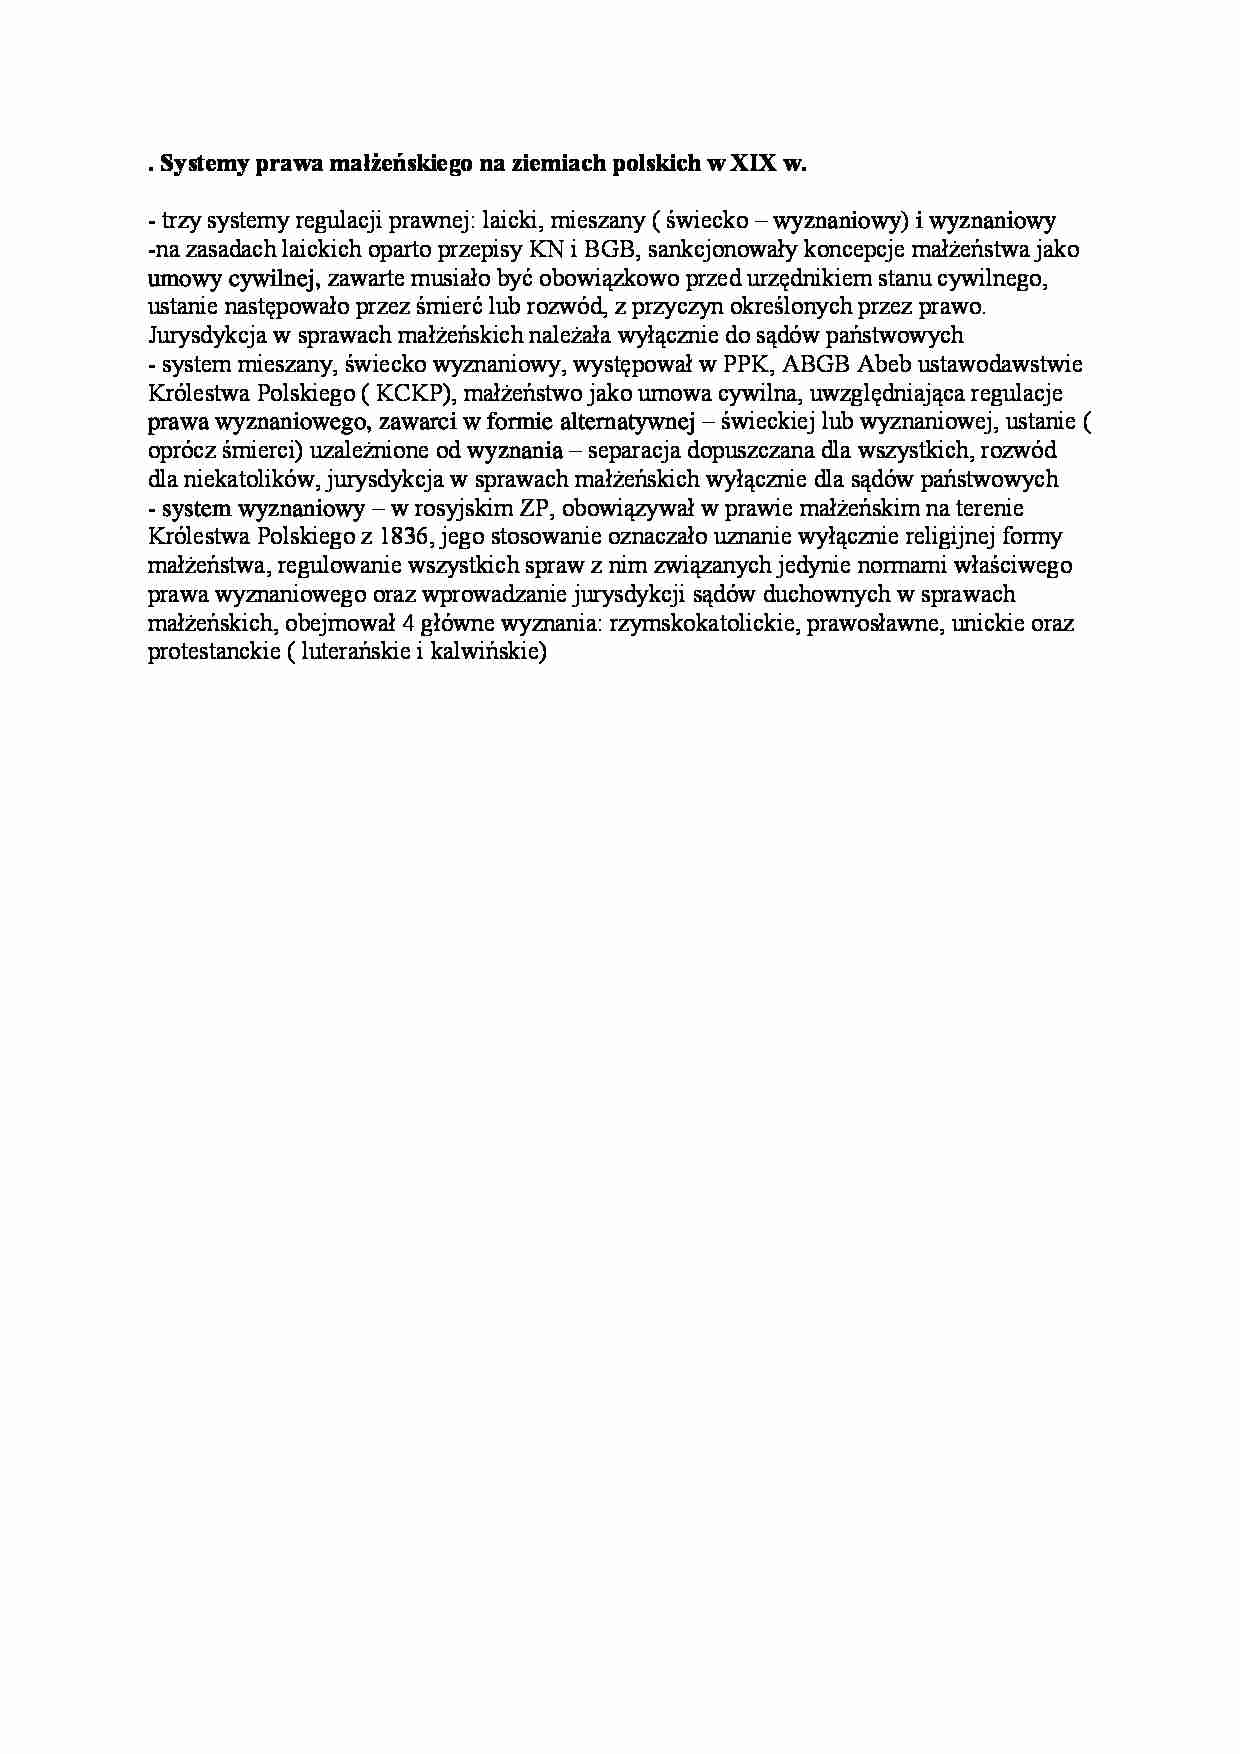 Systemy prawa małżeńskiego na ziemiach polskich w XIX wieku - strona 1